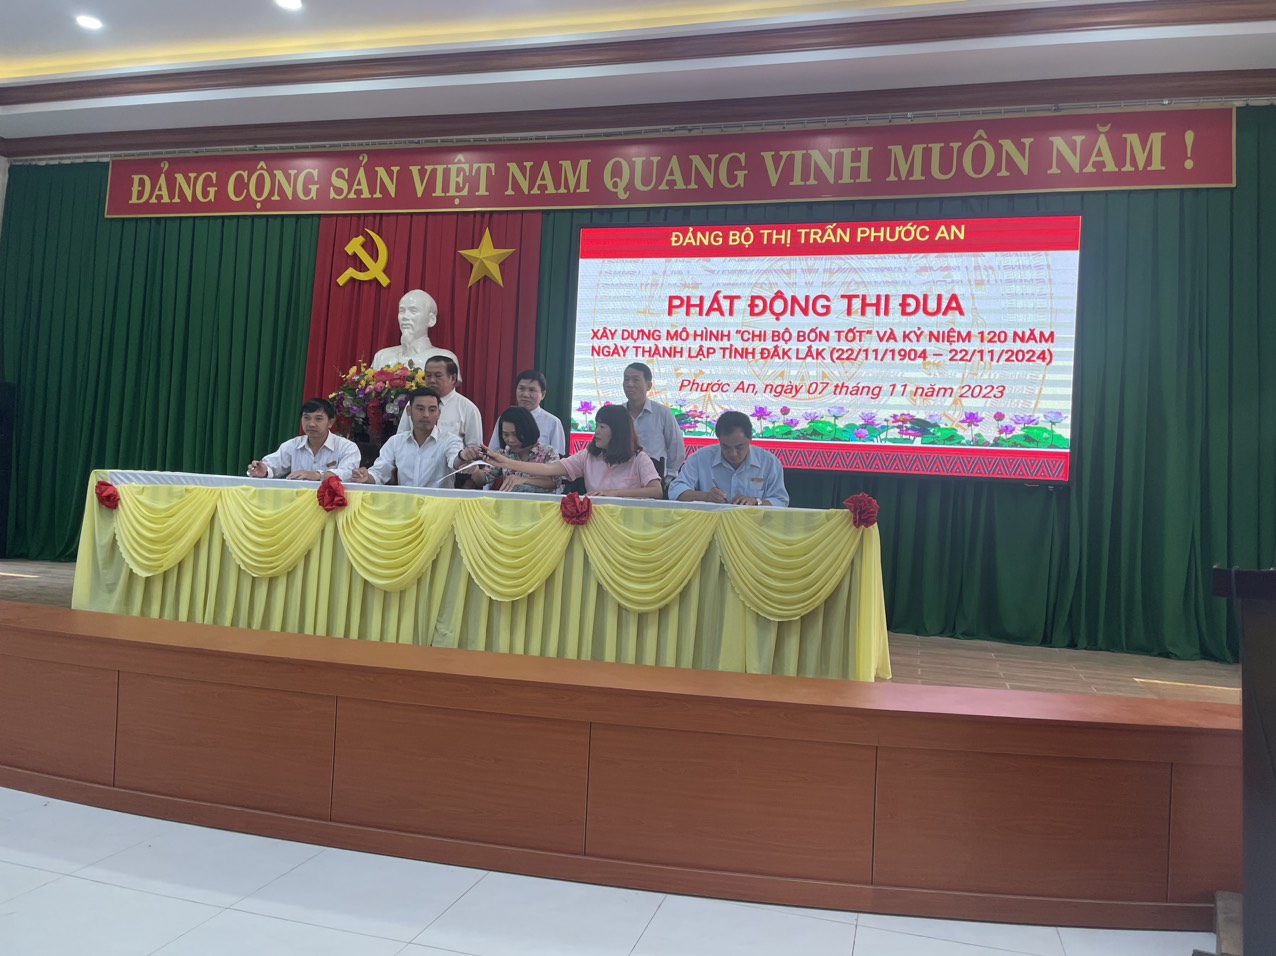 Đảng bộ thị trấn Phước An phát động thi đua  Xây dựng mô hình" Chi bộ bốn tốt" và kỷ niệm 120 năm ngày thành lập tỉnh Đắk Lắk (22/11/1904 - 22/11/2024)